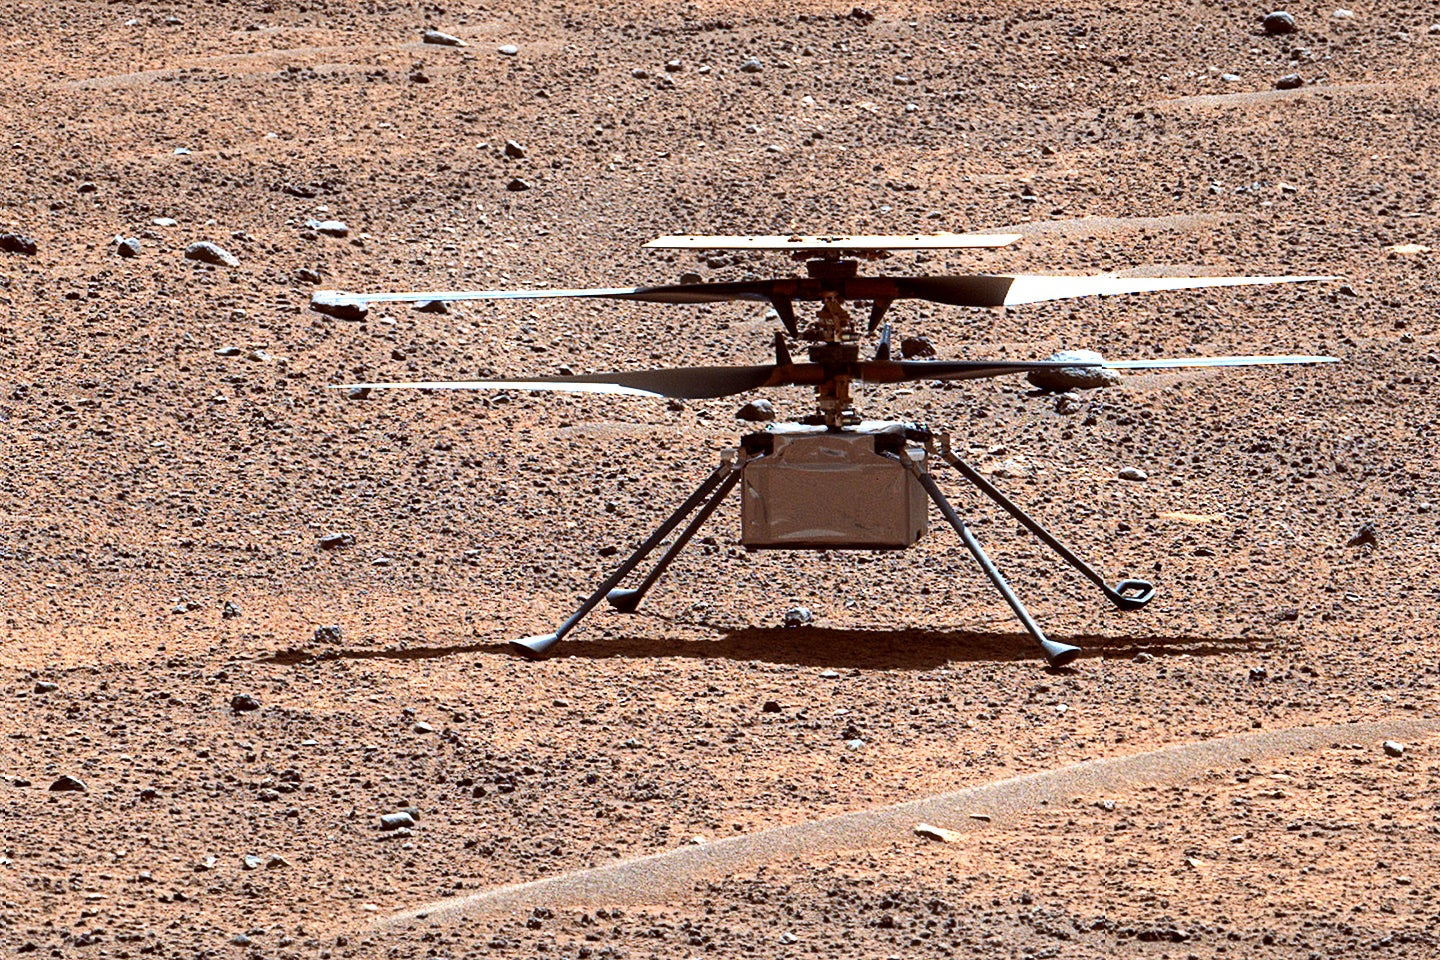 Mars Helicopter Ingenuity de la NASA termine sa mission sur la planète rouge après 3 ans